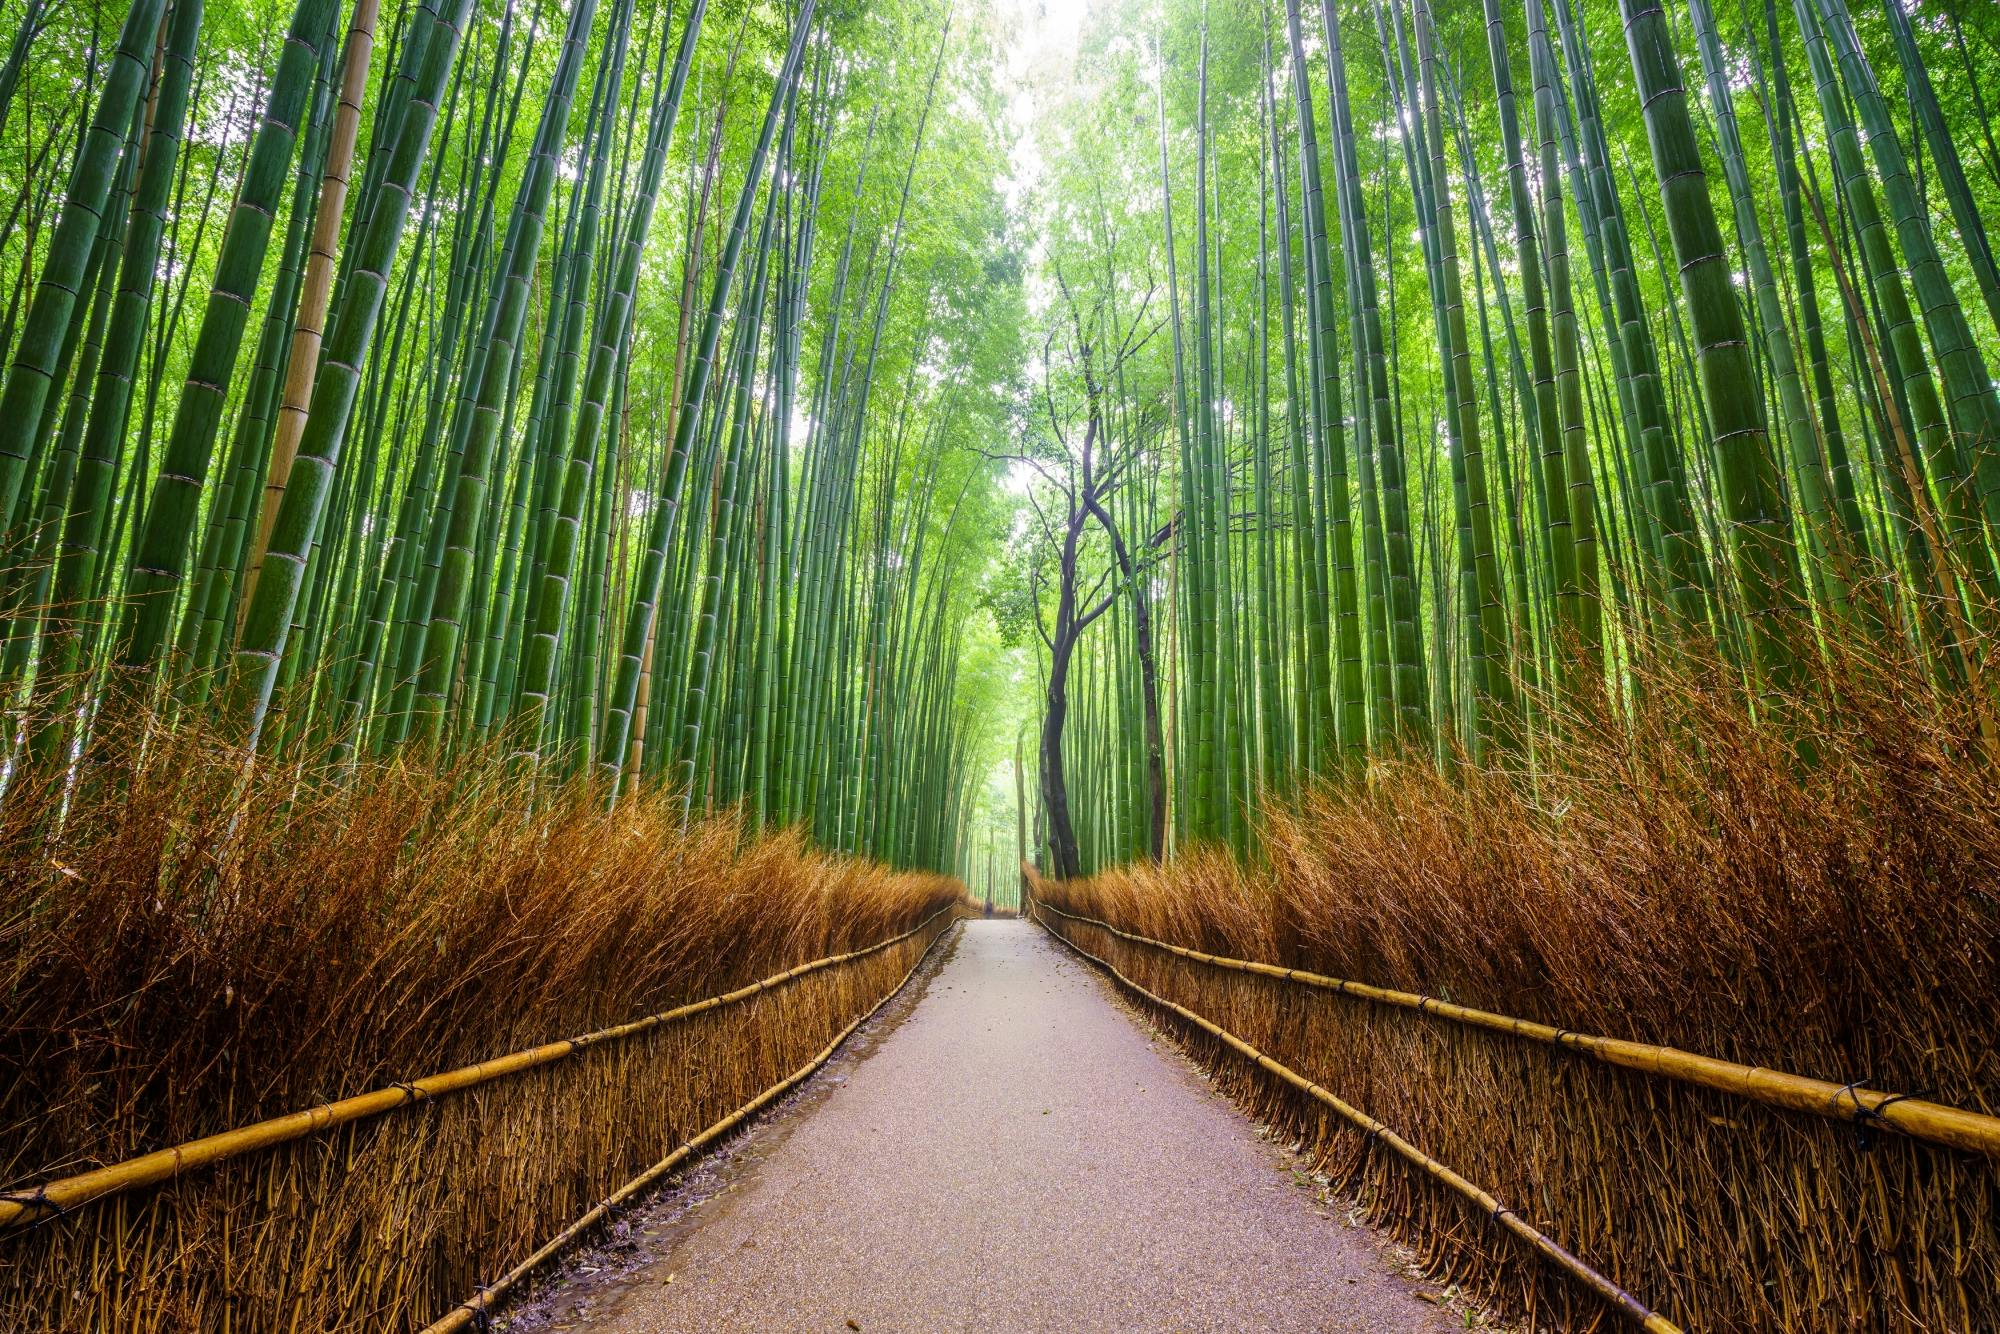 Geführte kulinarische Tour durch Arashiyama und Sagano in Kyoto